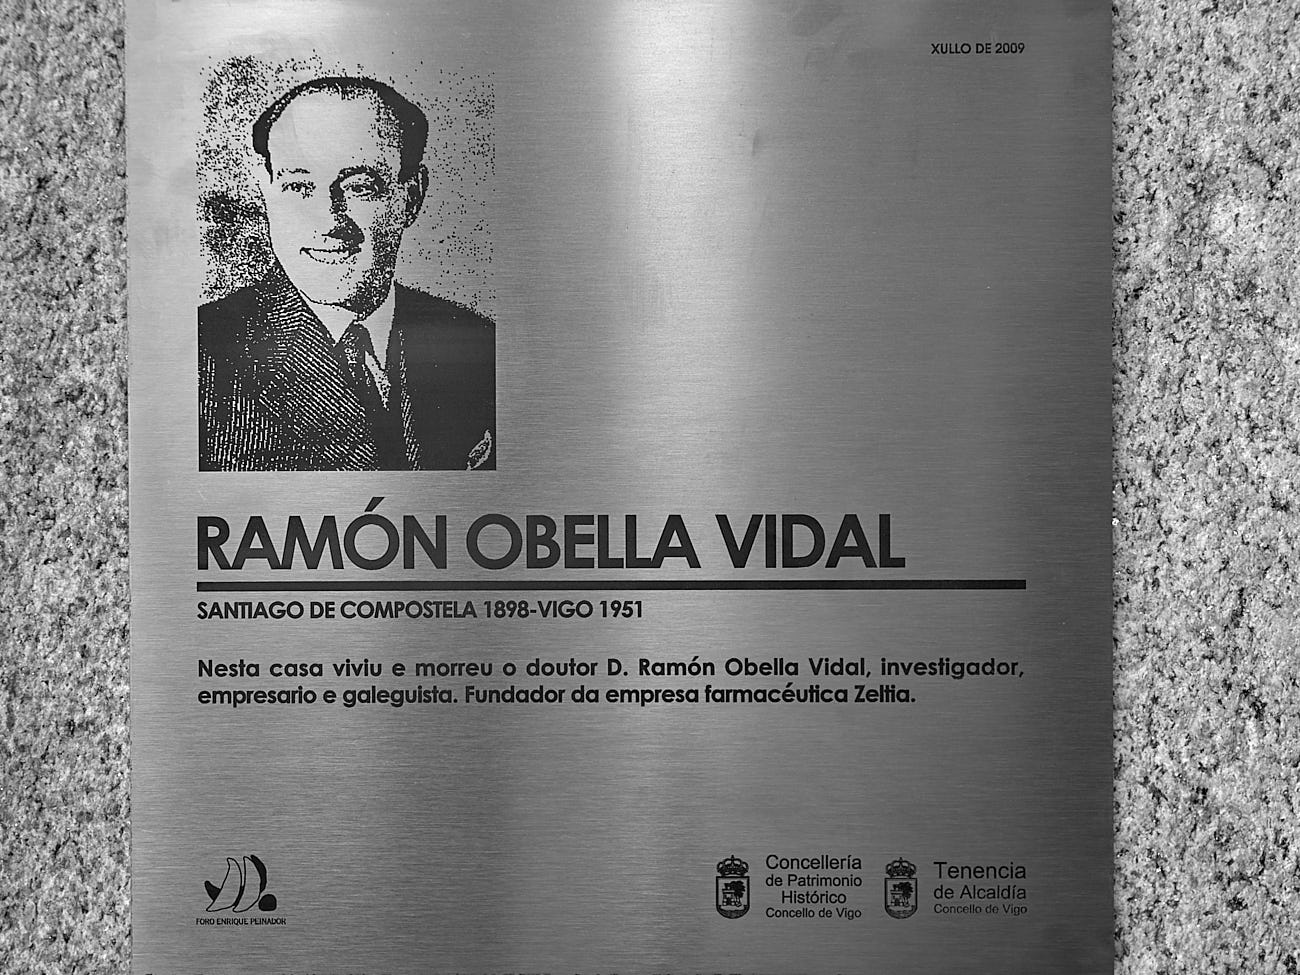 Descuberta unha placa conmemorativa no edificio onde vivíu e morreu Ramón Obella Vidal- Foro Peinador - 20/07/2009